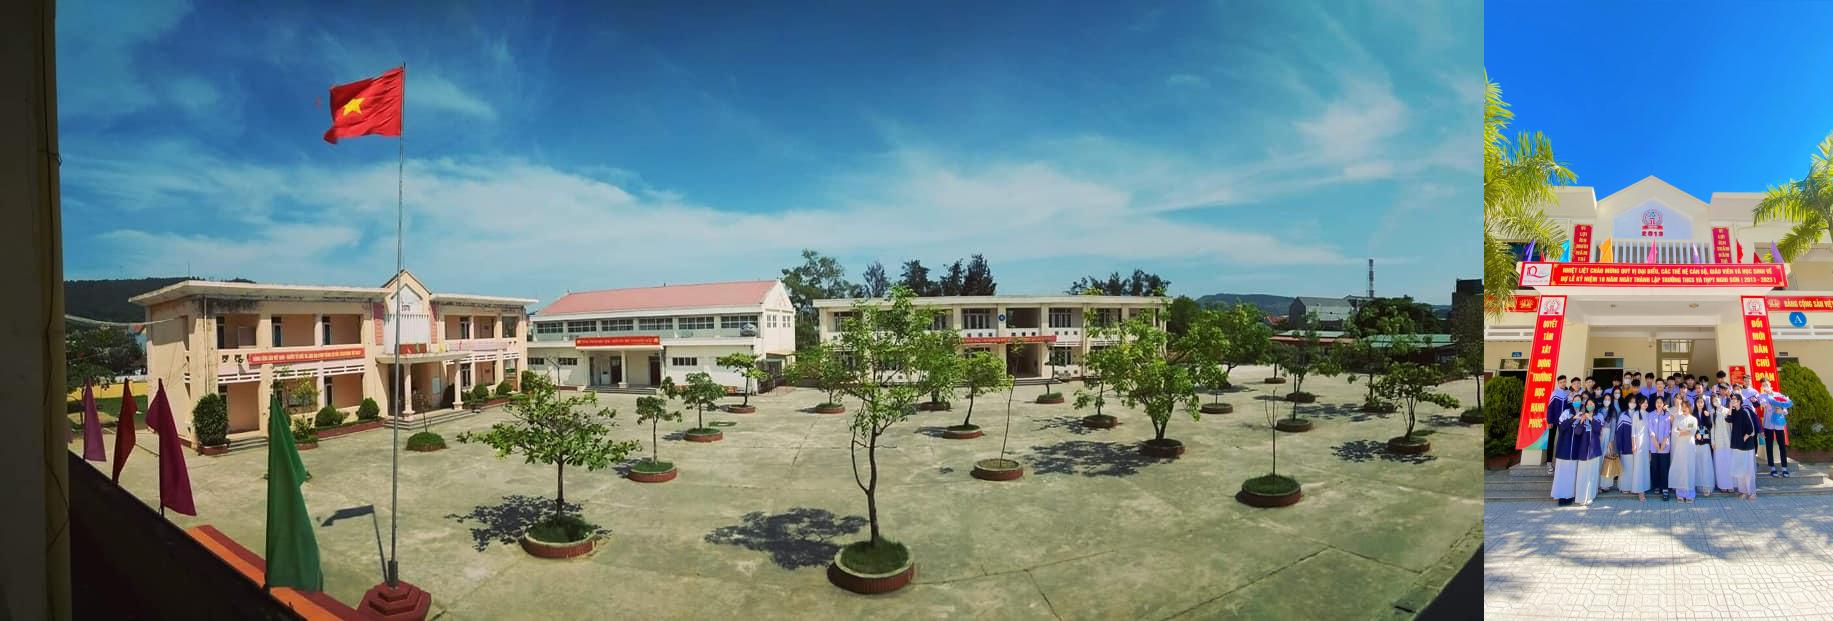 Trường THCS THPT Nghi Sơn - Thanh Hóa